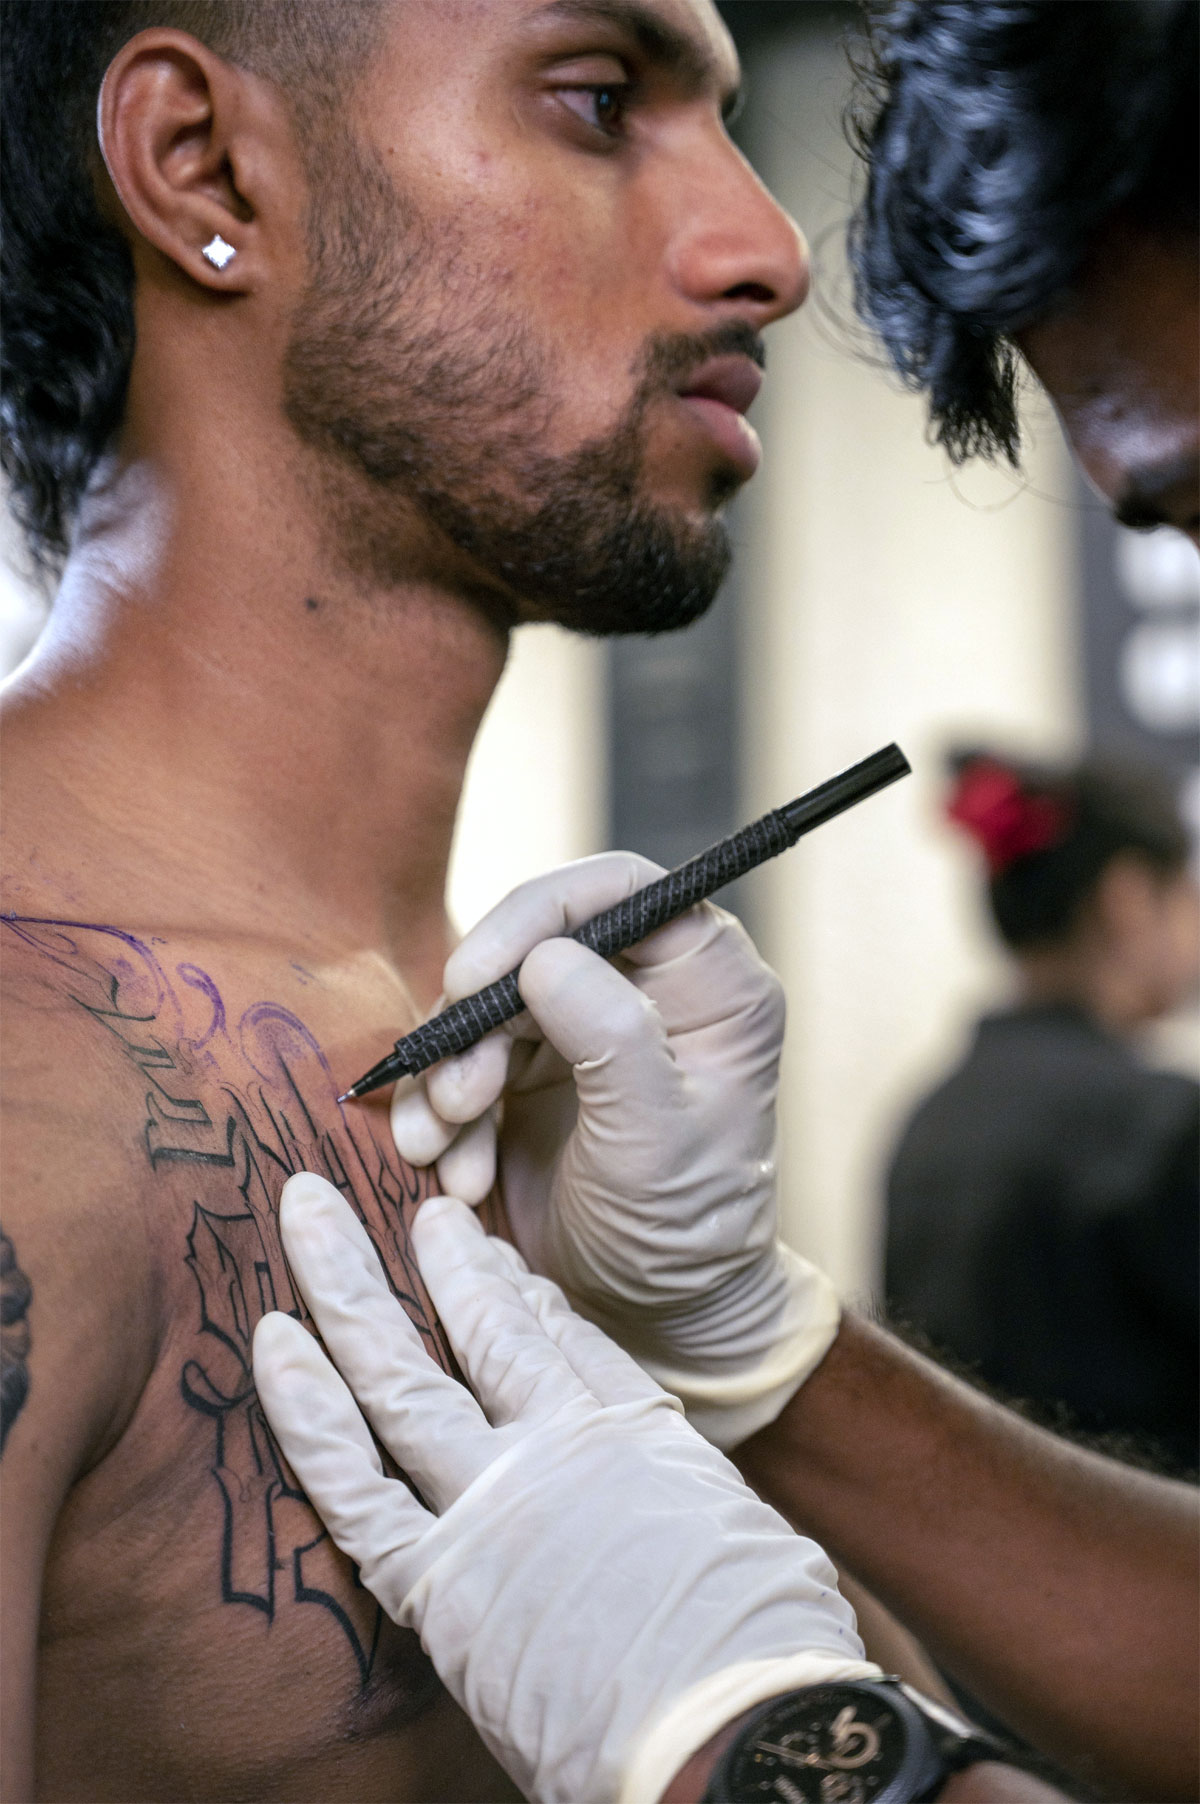 Deep Aarchi Tattoo - Trishul Tattoo with tilak and mantra done at Permanent  Tattoo Art Deepaarchi tattoo Studio #trishultattoo #deepaarchitattoo  #tilaktattoo #mahamirtunjaiya #mantratattoo #permanenttattooart #supermart2  #dlf #phase4 #market #tattooart ...